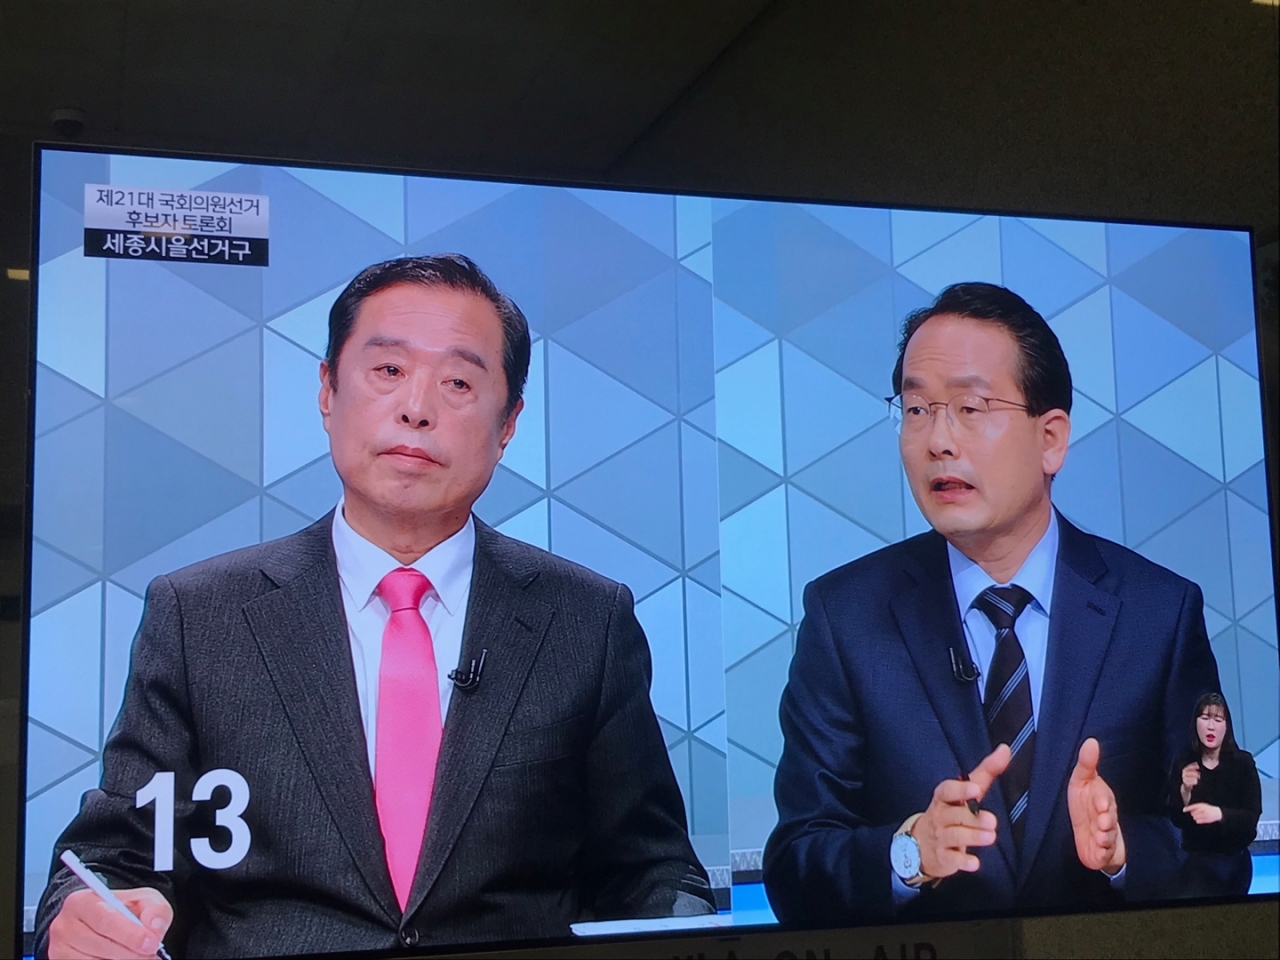 9일 열린 제21대 국회의원후보 세종을 토론회에서 김병준 통합당 후보(왼쪽)와 강준현 민주당 후보(오른쪽)가 세종시 설계자론에 대해 공방을 벌이고 있다. 사진은 대전MBC 방송 화면.